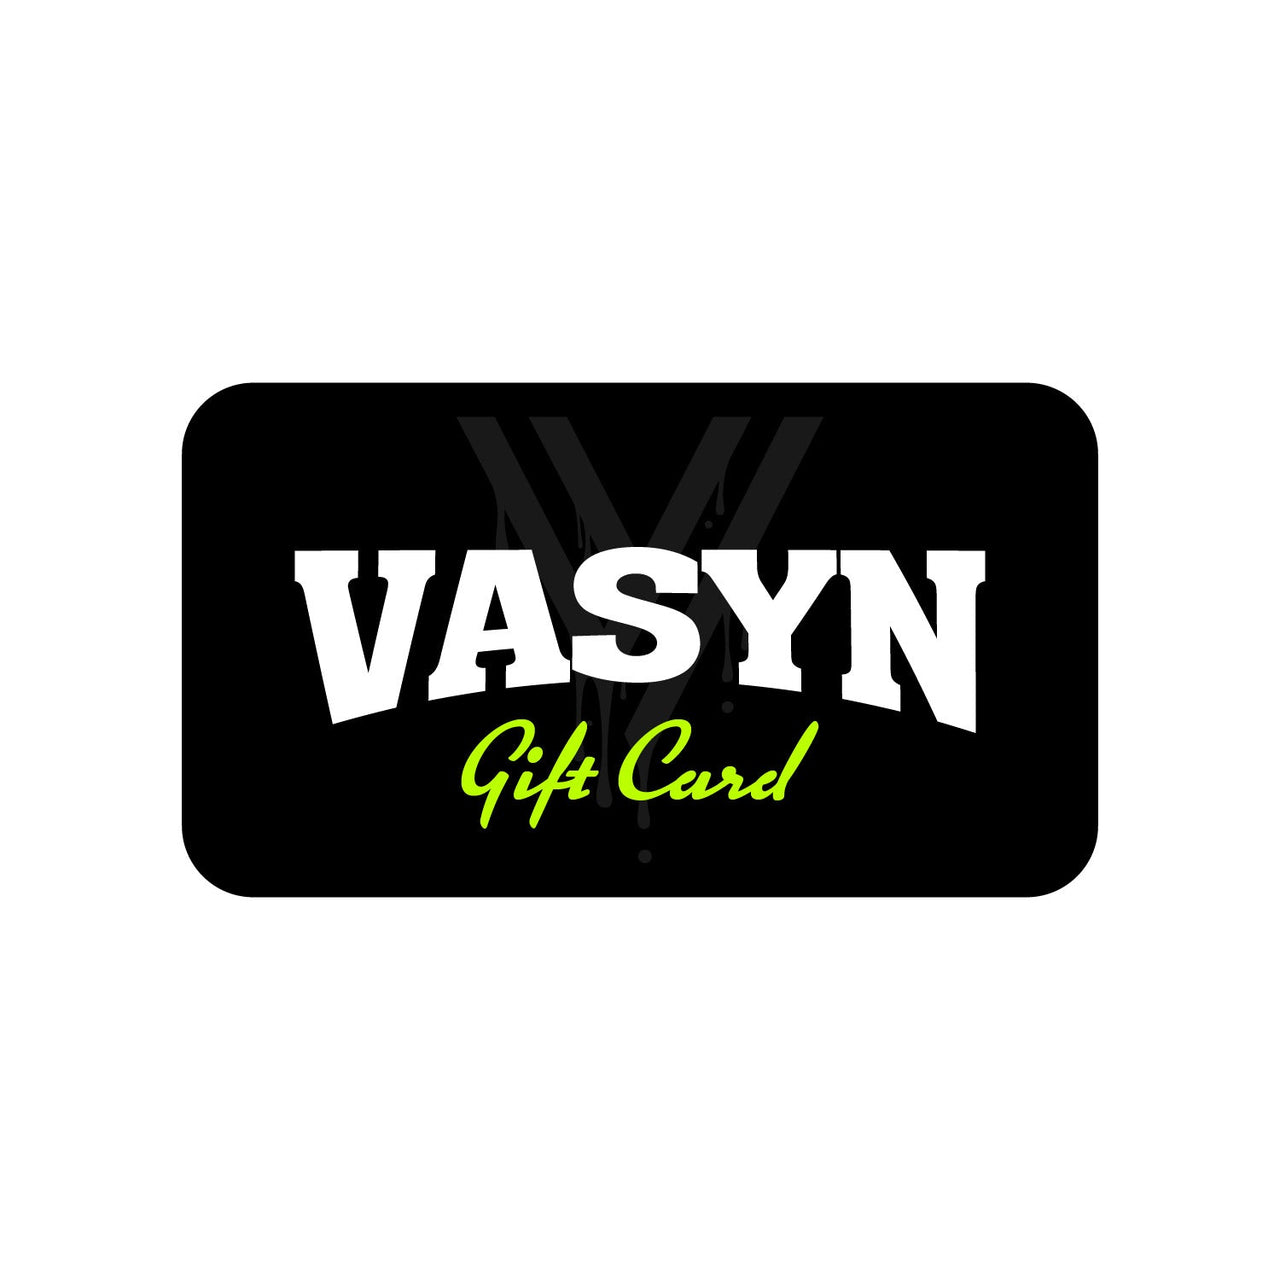 Vasyn Gift Card - Vasyn | Official Store